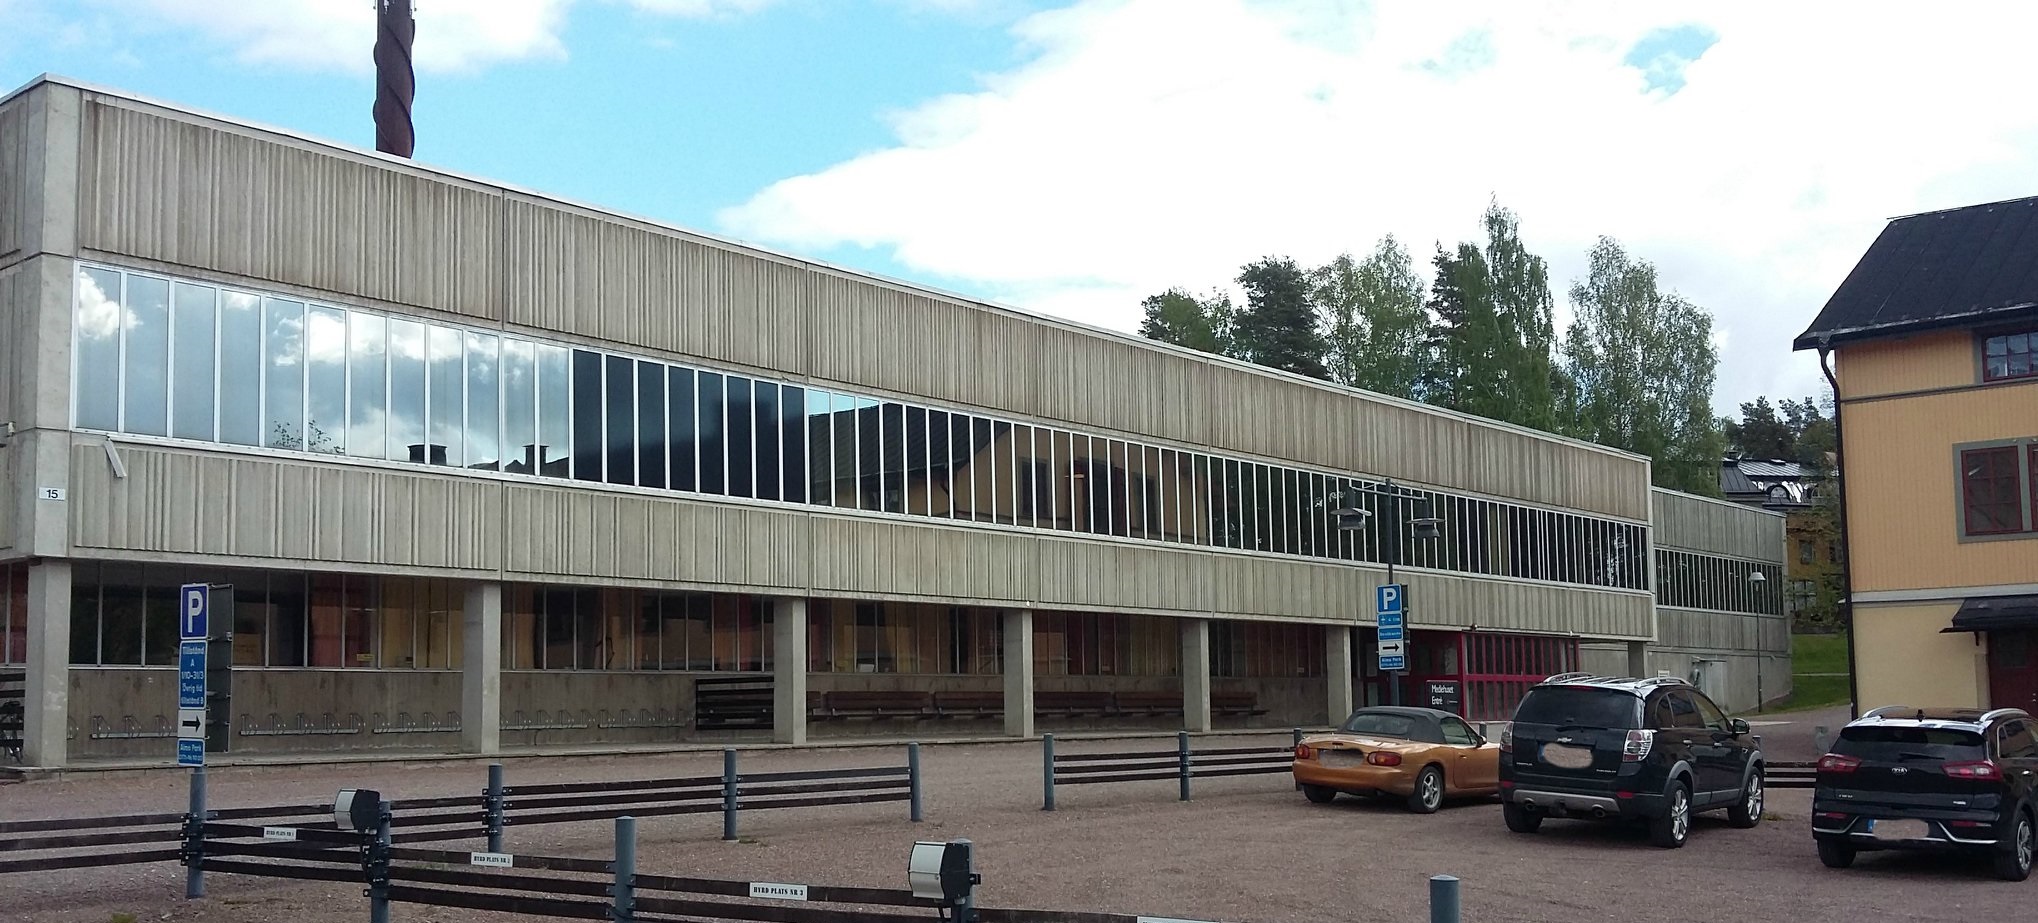 Är Mediehuset i Falun Sveriges fulaste byggnad genom tiderna?